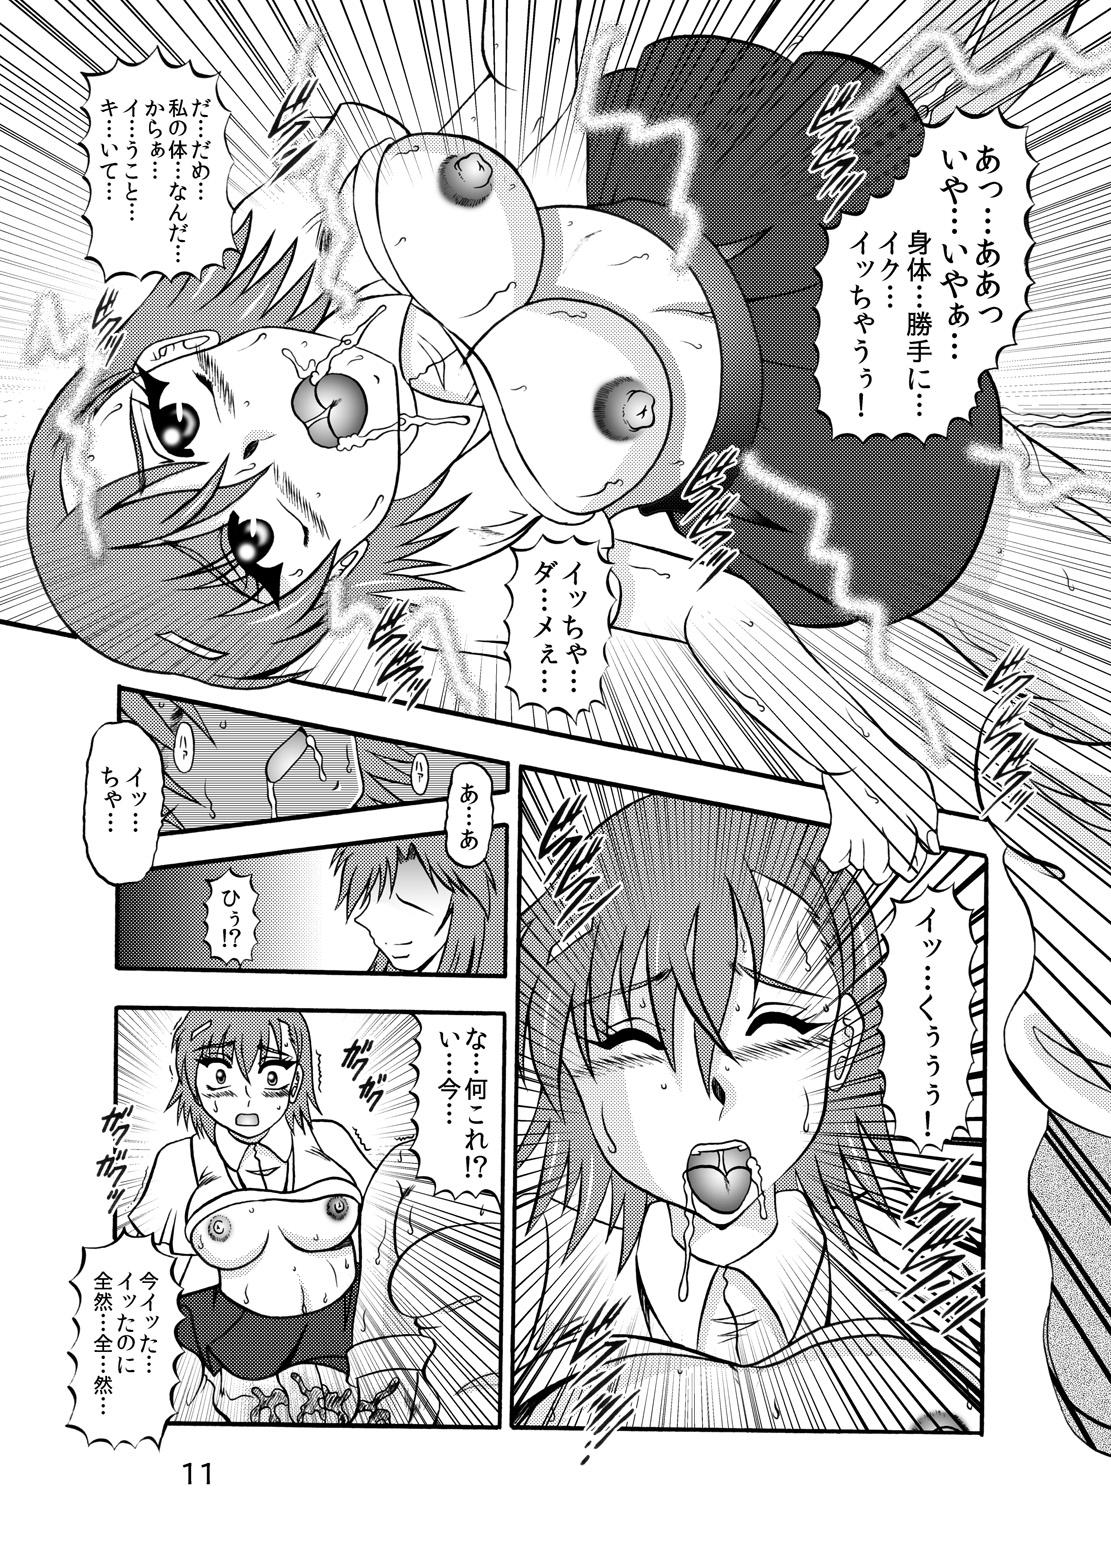 Wet Cunts Inyoku Kaizou: Misaka Mikoto - Toaru kagaku no railgun Super Hot Porn - Page 9